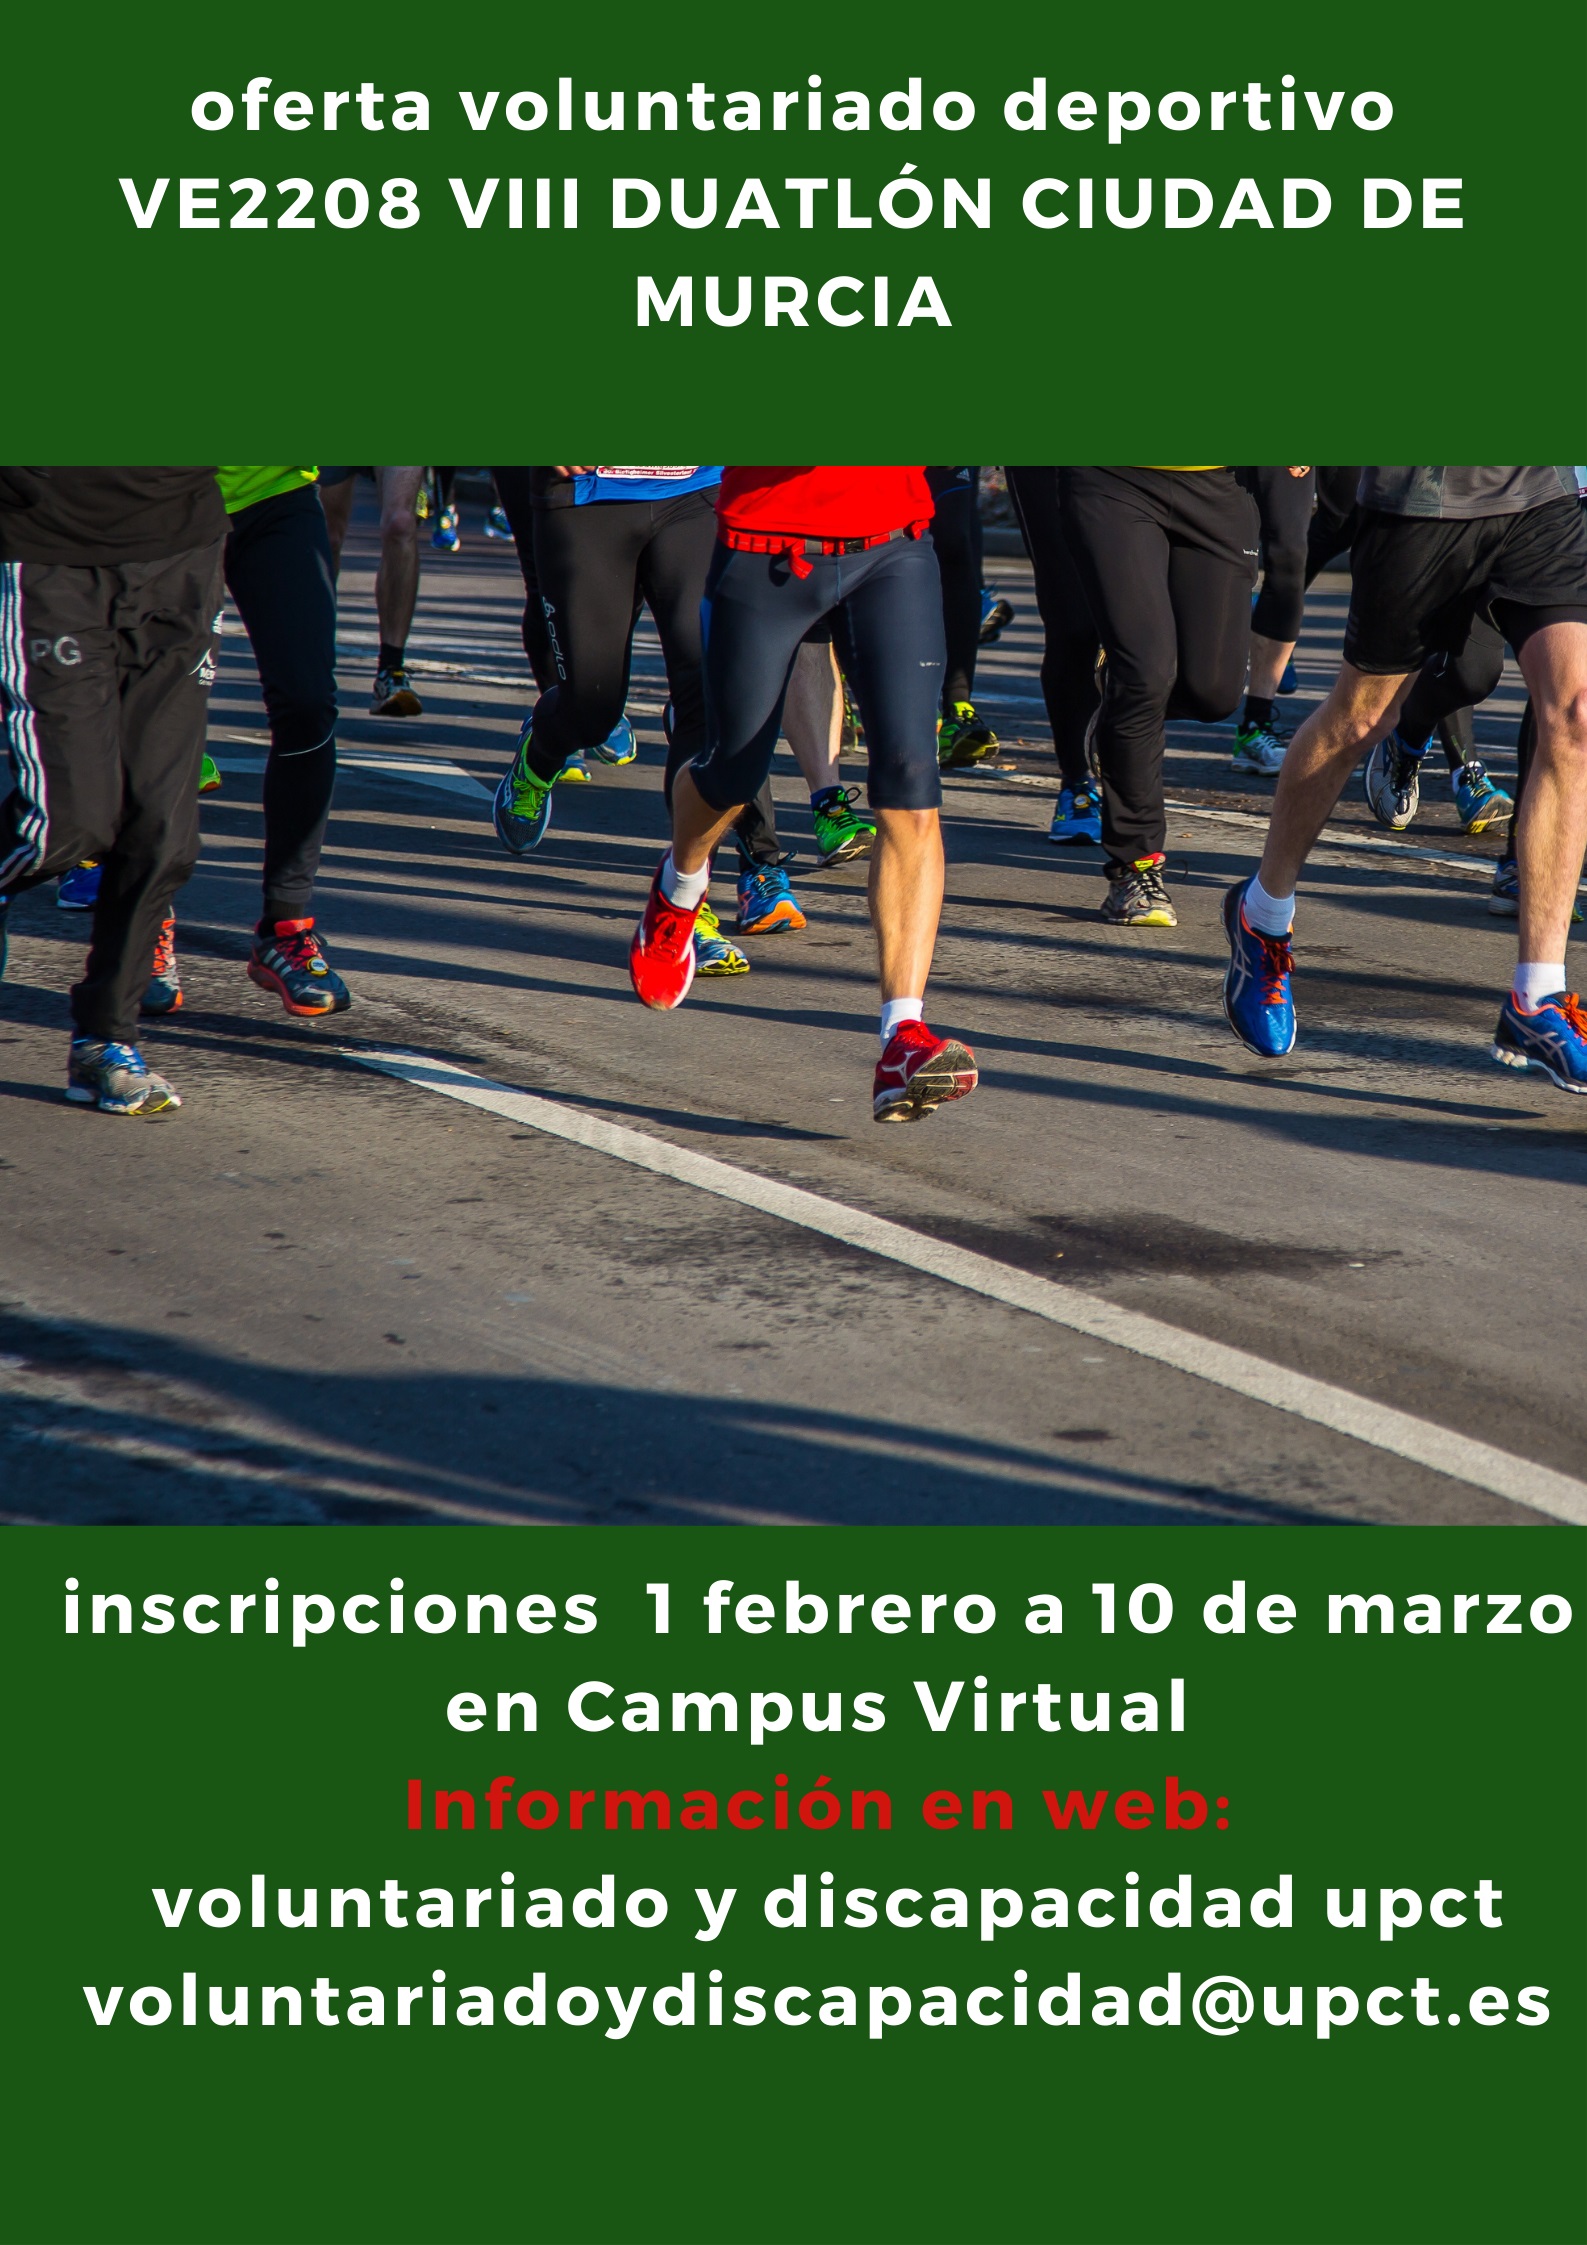 Oferta voluntariado deportivo. VIII Duatlón ciudad de Murcia